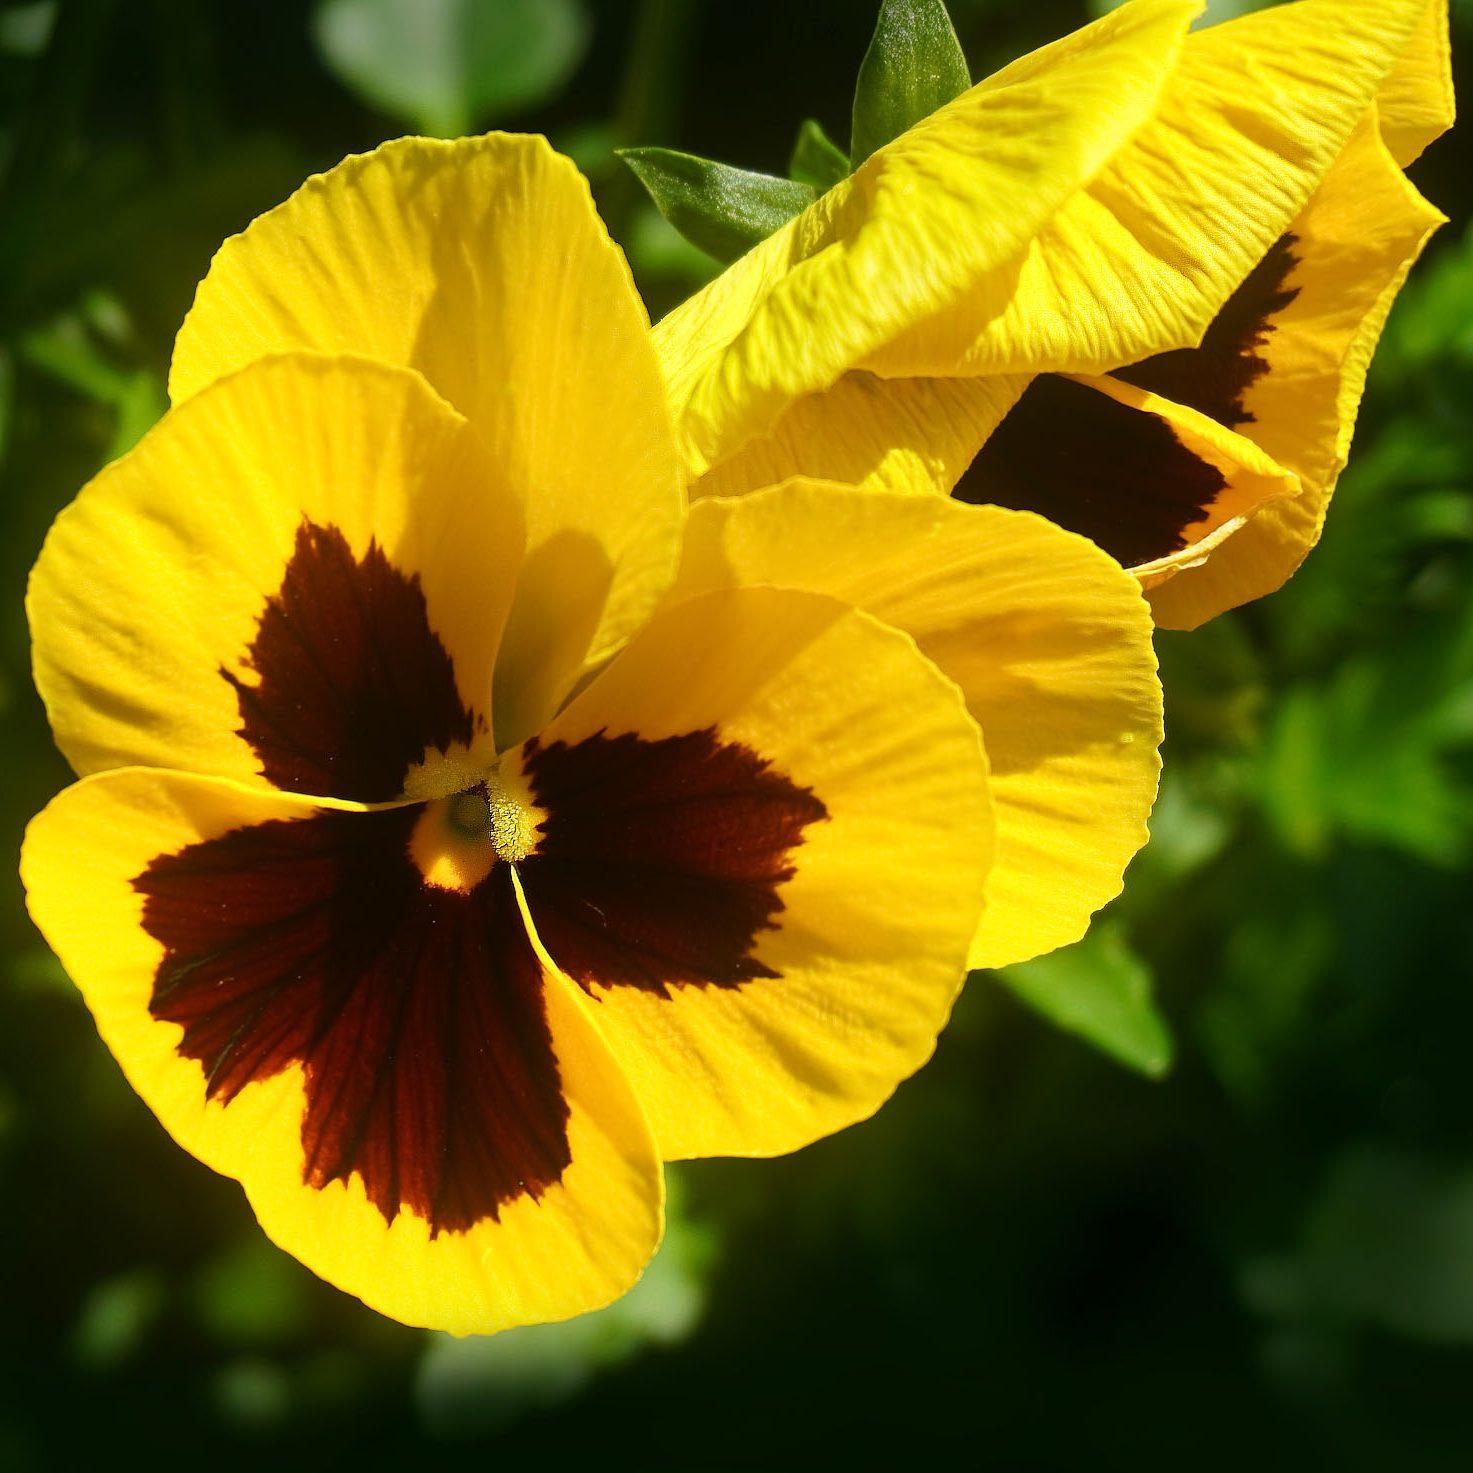 Planta Pensamiento Amarillo | Venta de Plantas y Semillas | Tienda Online